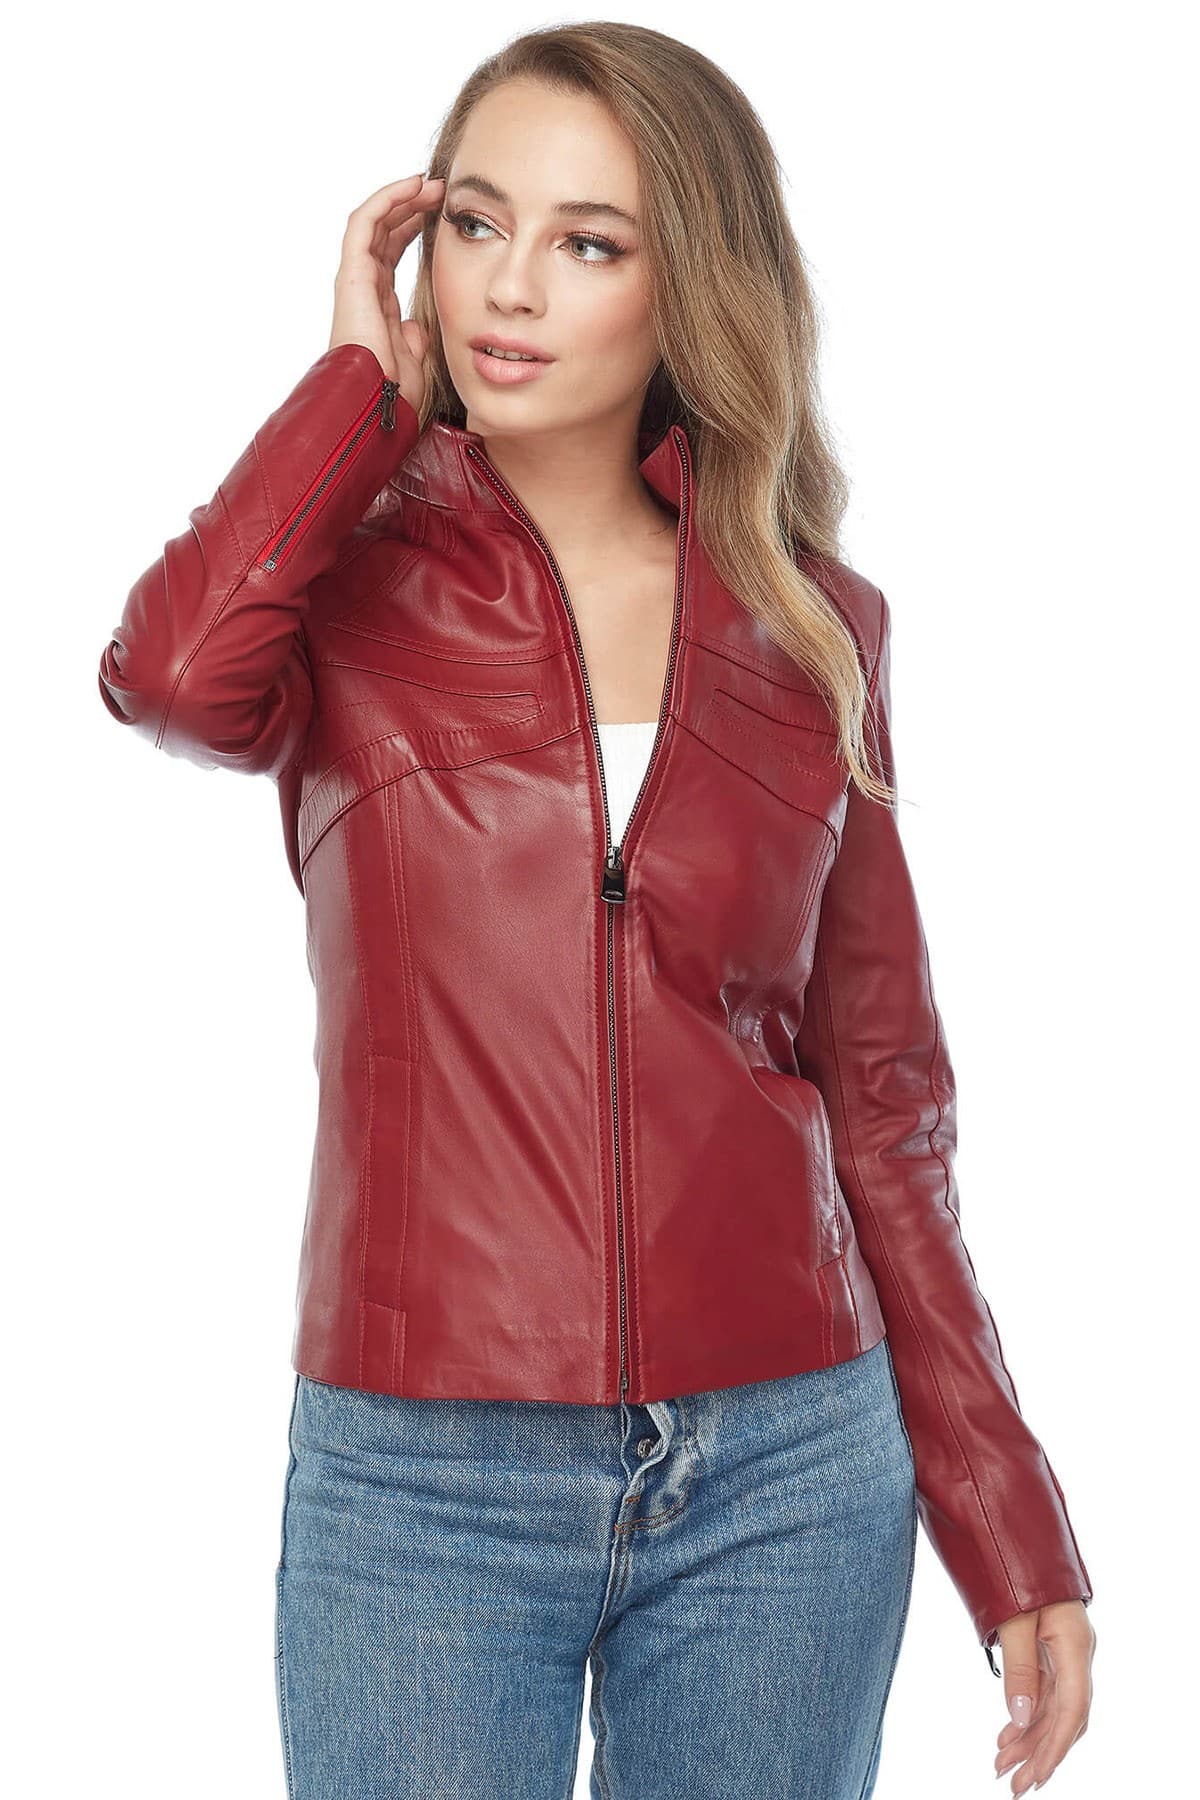 Karen Gillan Red Leather Jacket3